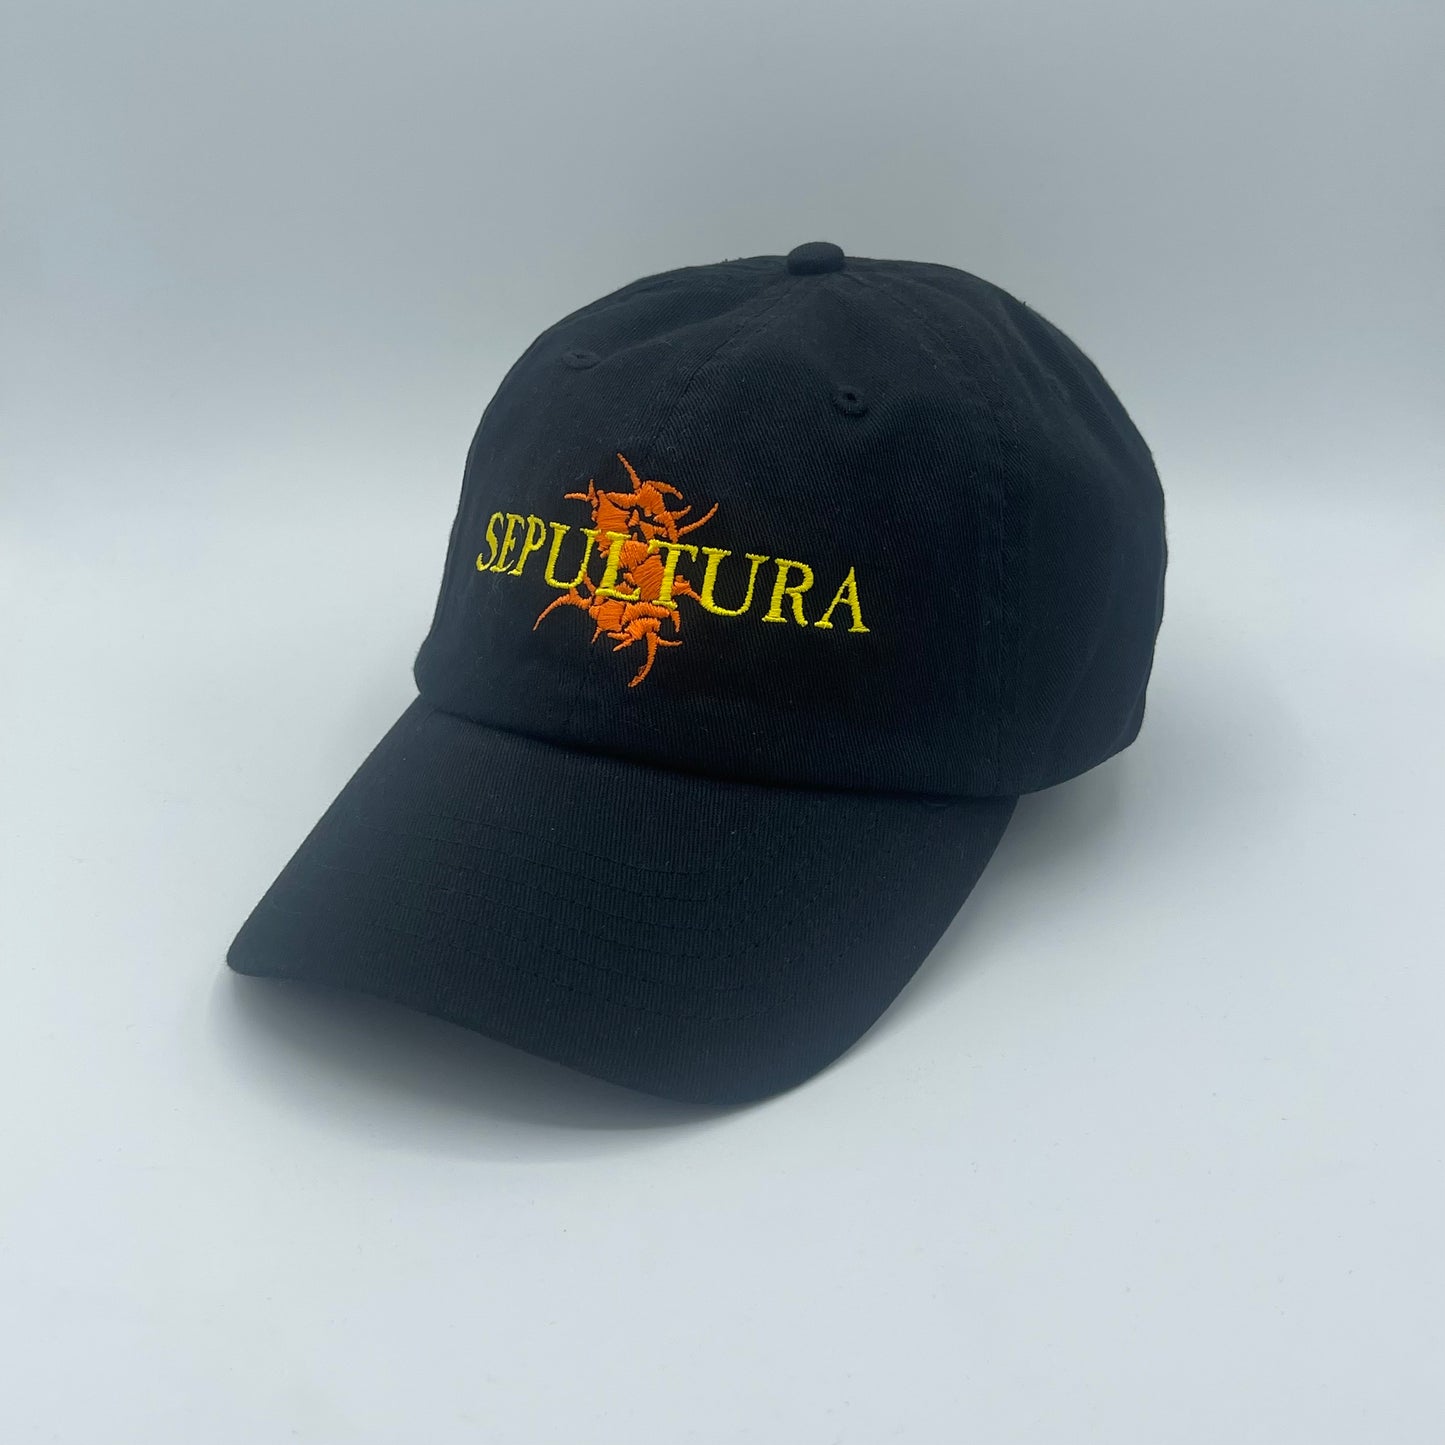 Sepultura Hat